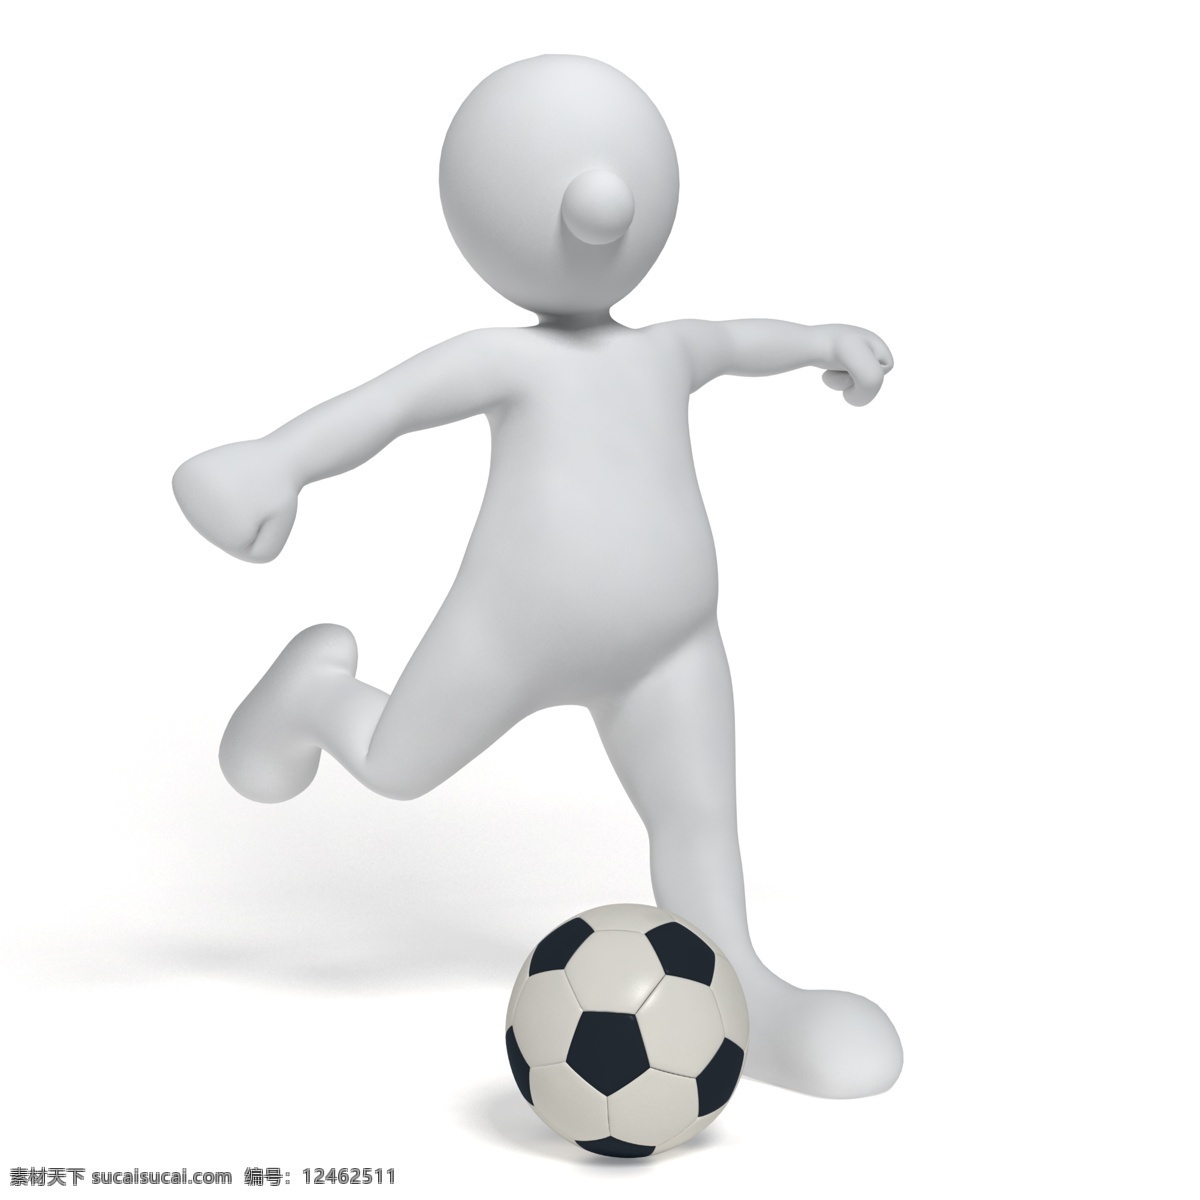 3d人物 3d设计 3d小人 健身运动 欧洲杯 踢足球 足球 踢 设计素材 模板下载 足球运动 足球俱乐部 白色小人 矢量图 日常生活